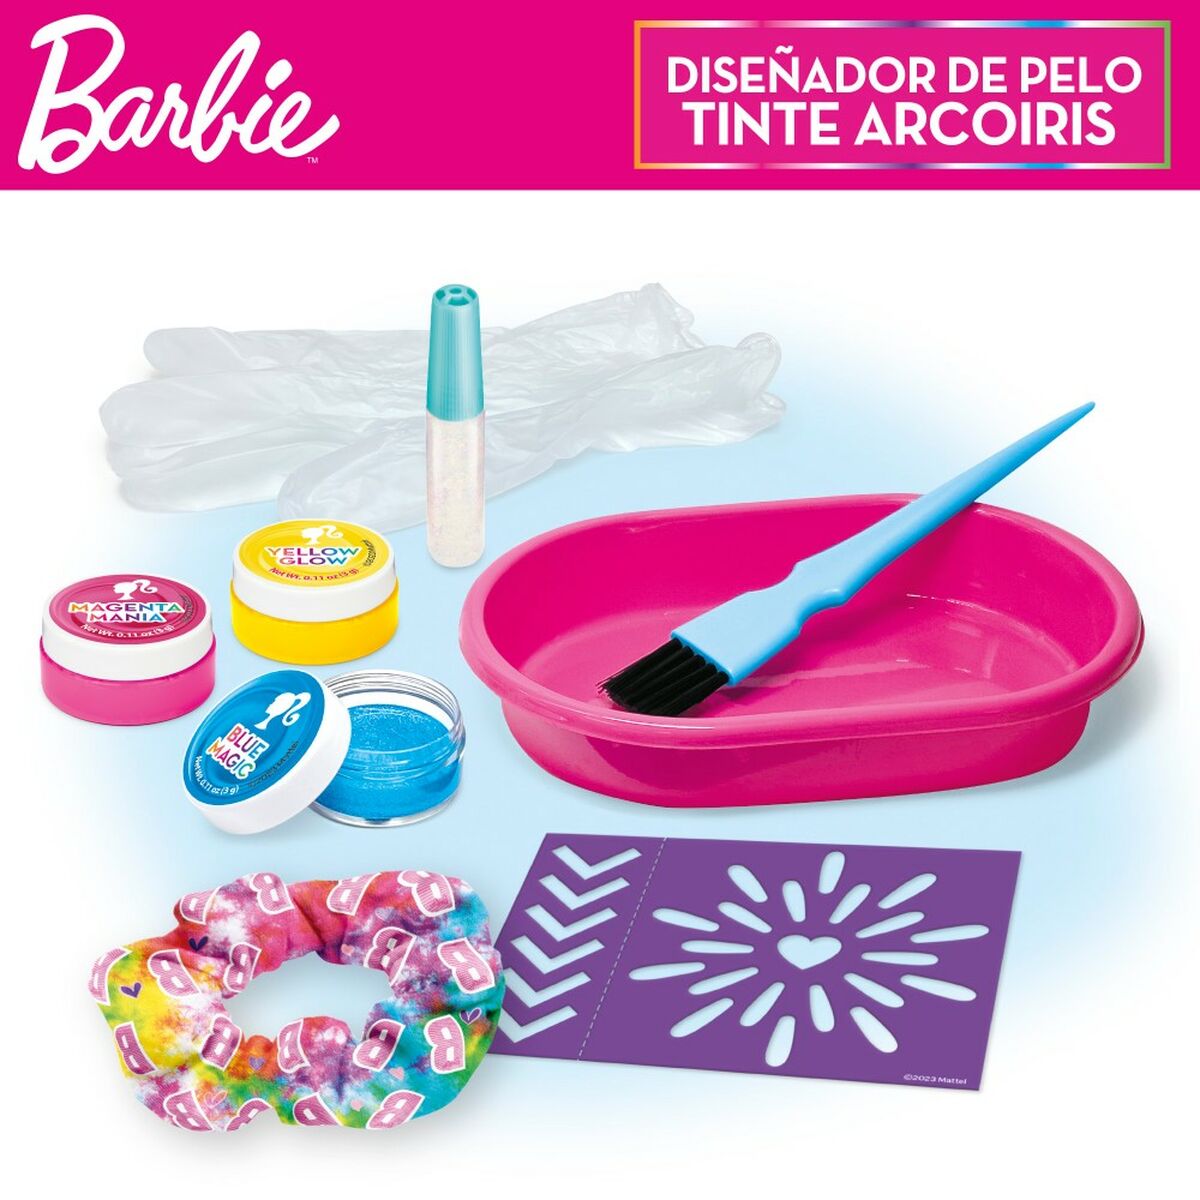 Hårstylingset Barbie Rainbow Tie 15,5 x 10,5 x 2,5 cm Hår med höjdpunkter Multicolour-Leksaker och spel, Imitera spel-Barbie-peaceofhome.se